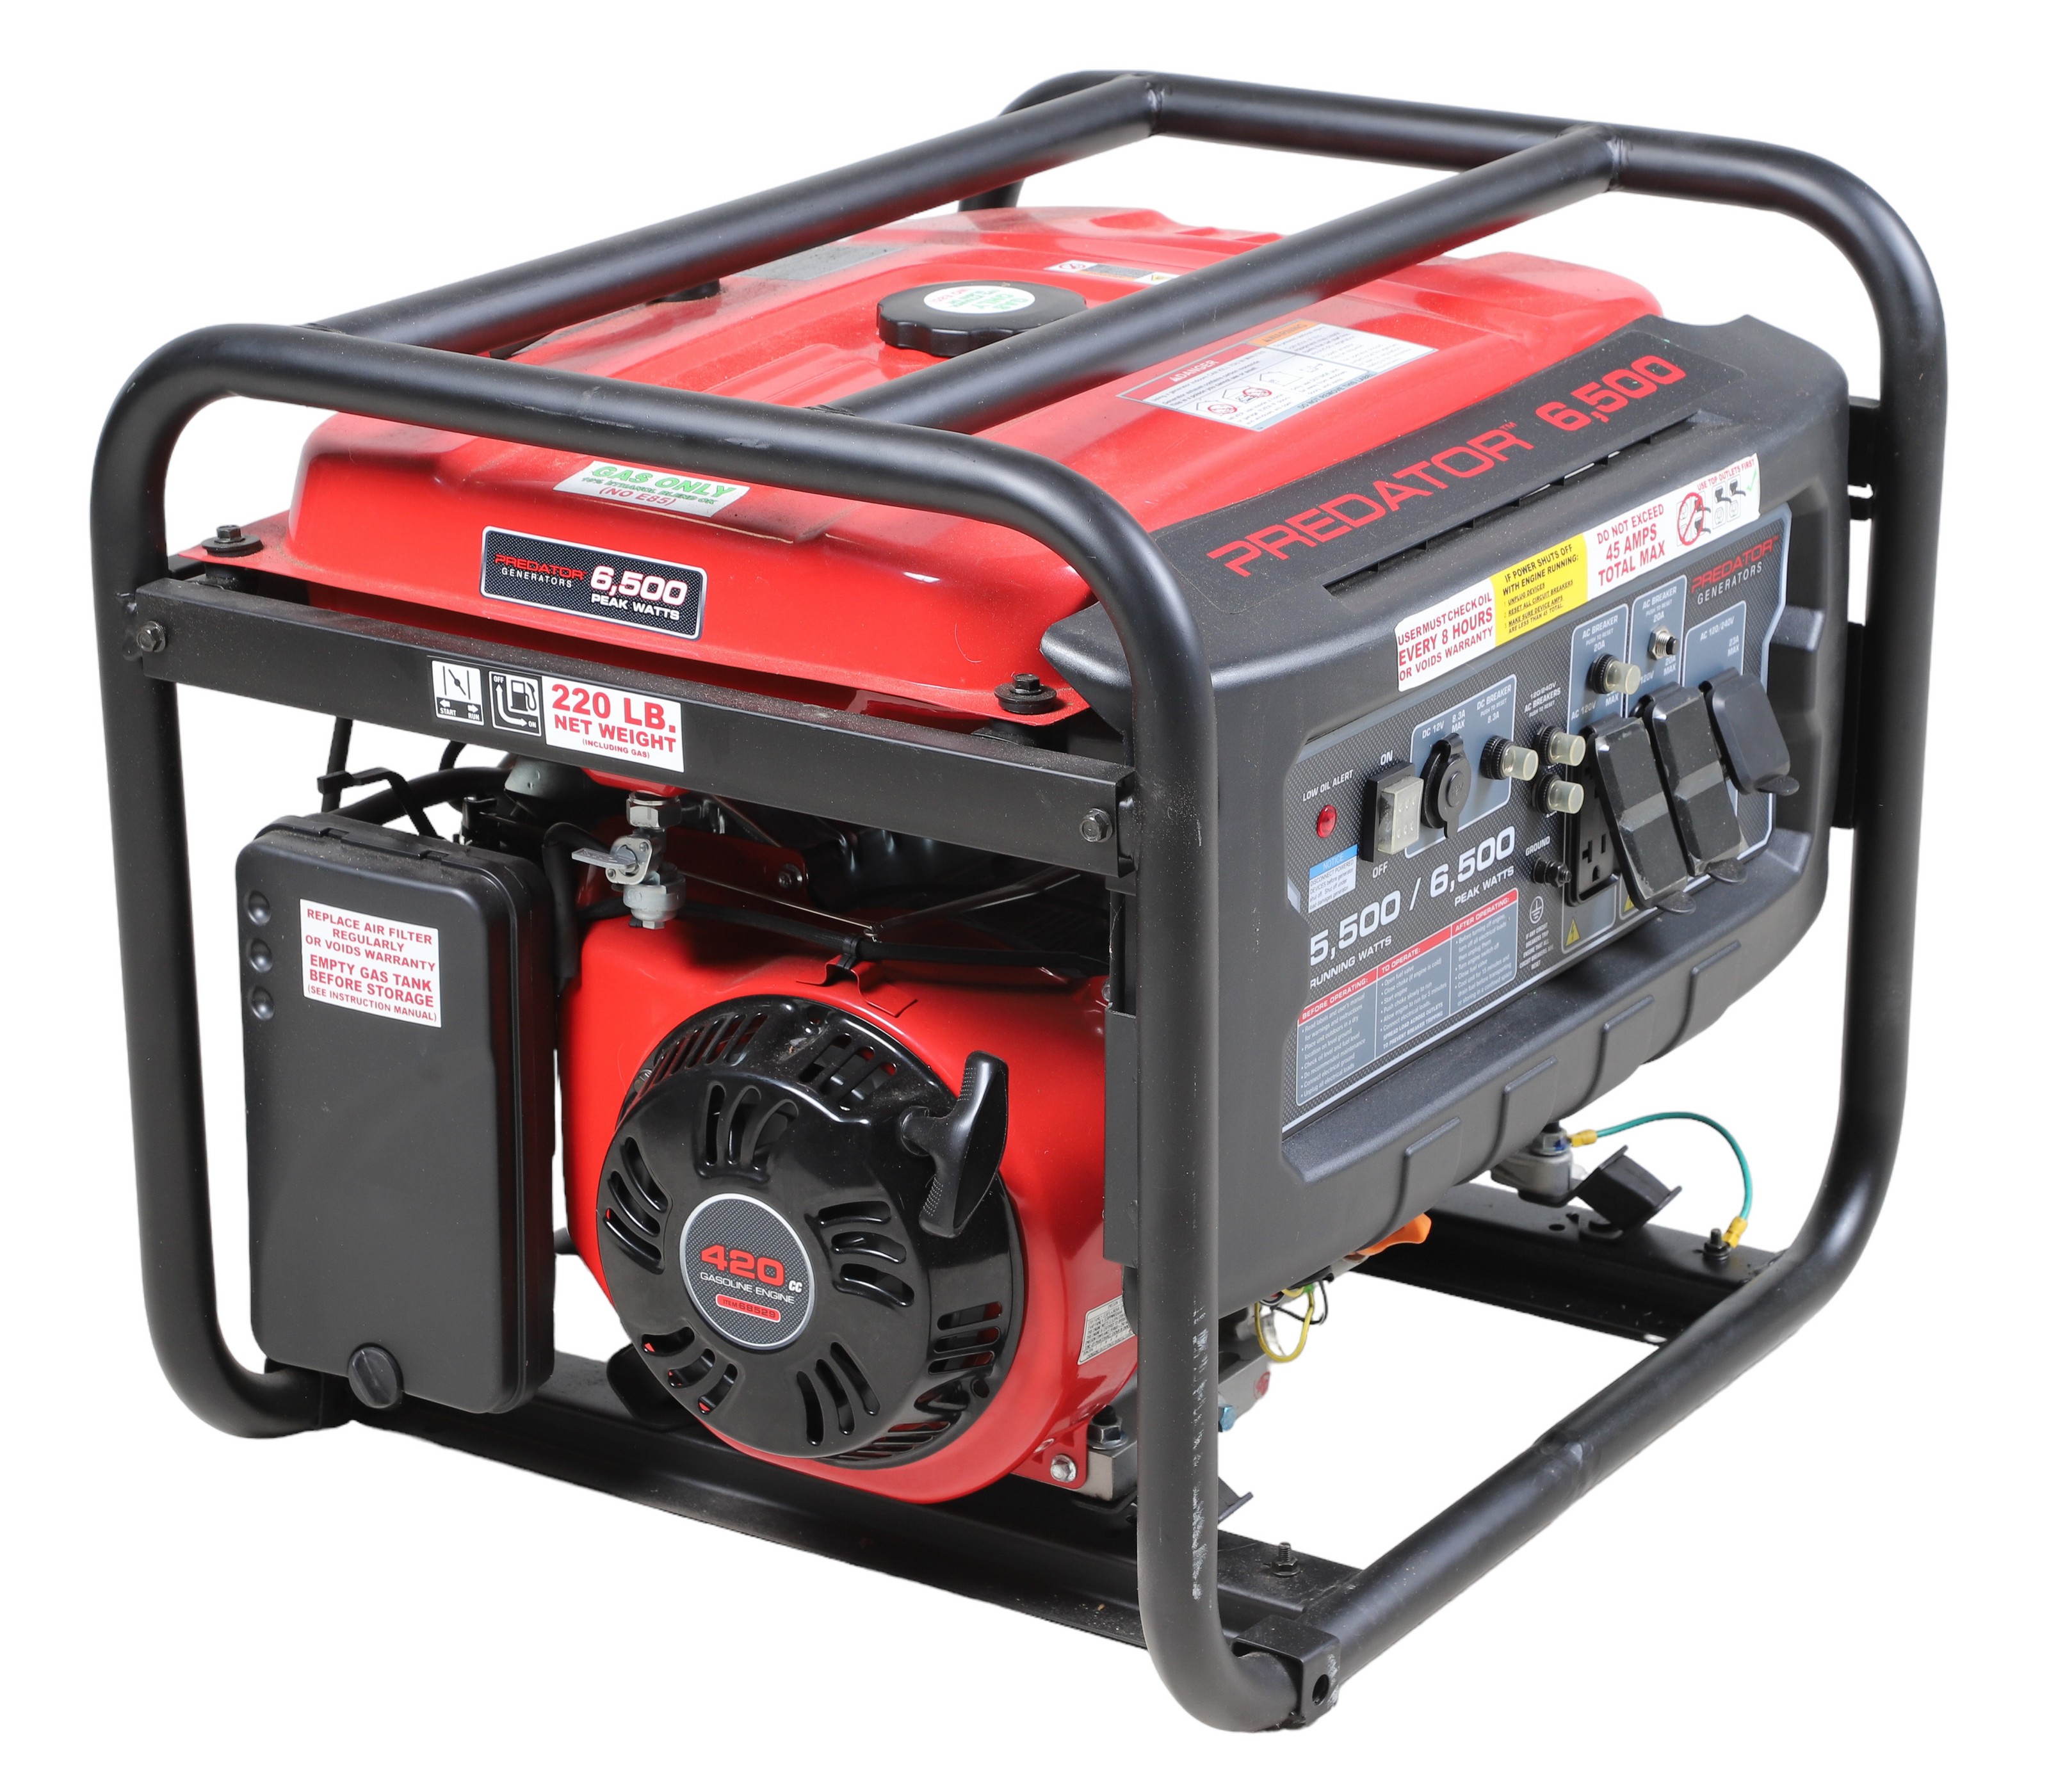 Predatro 6500 Gas powered generator  2e1040